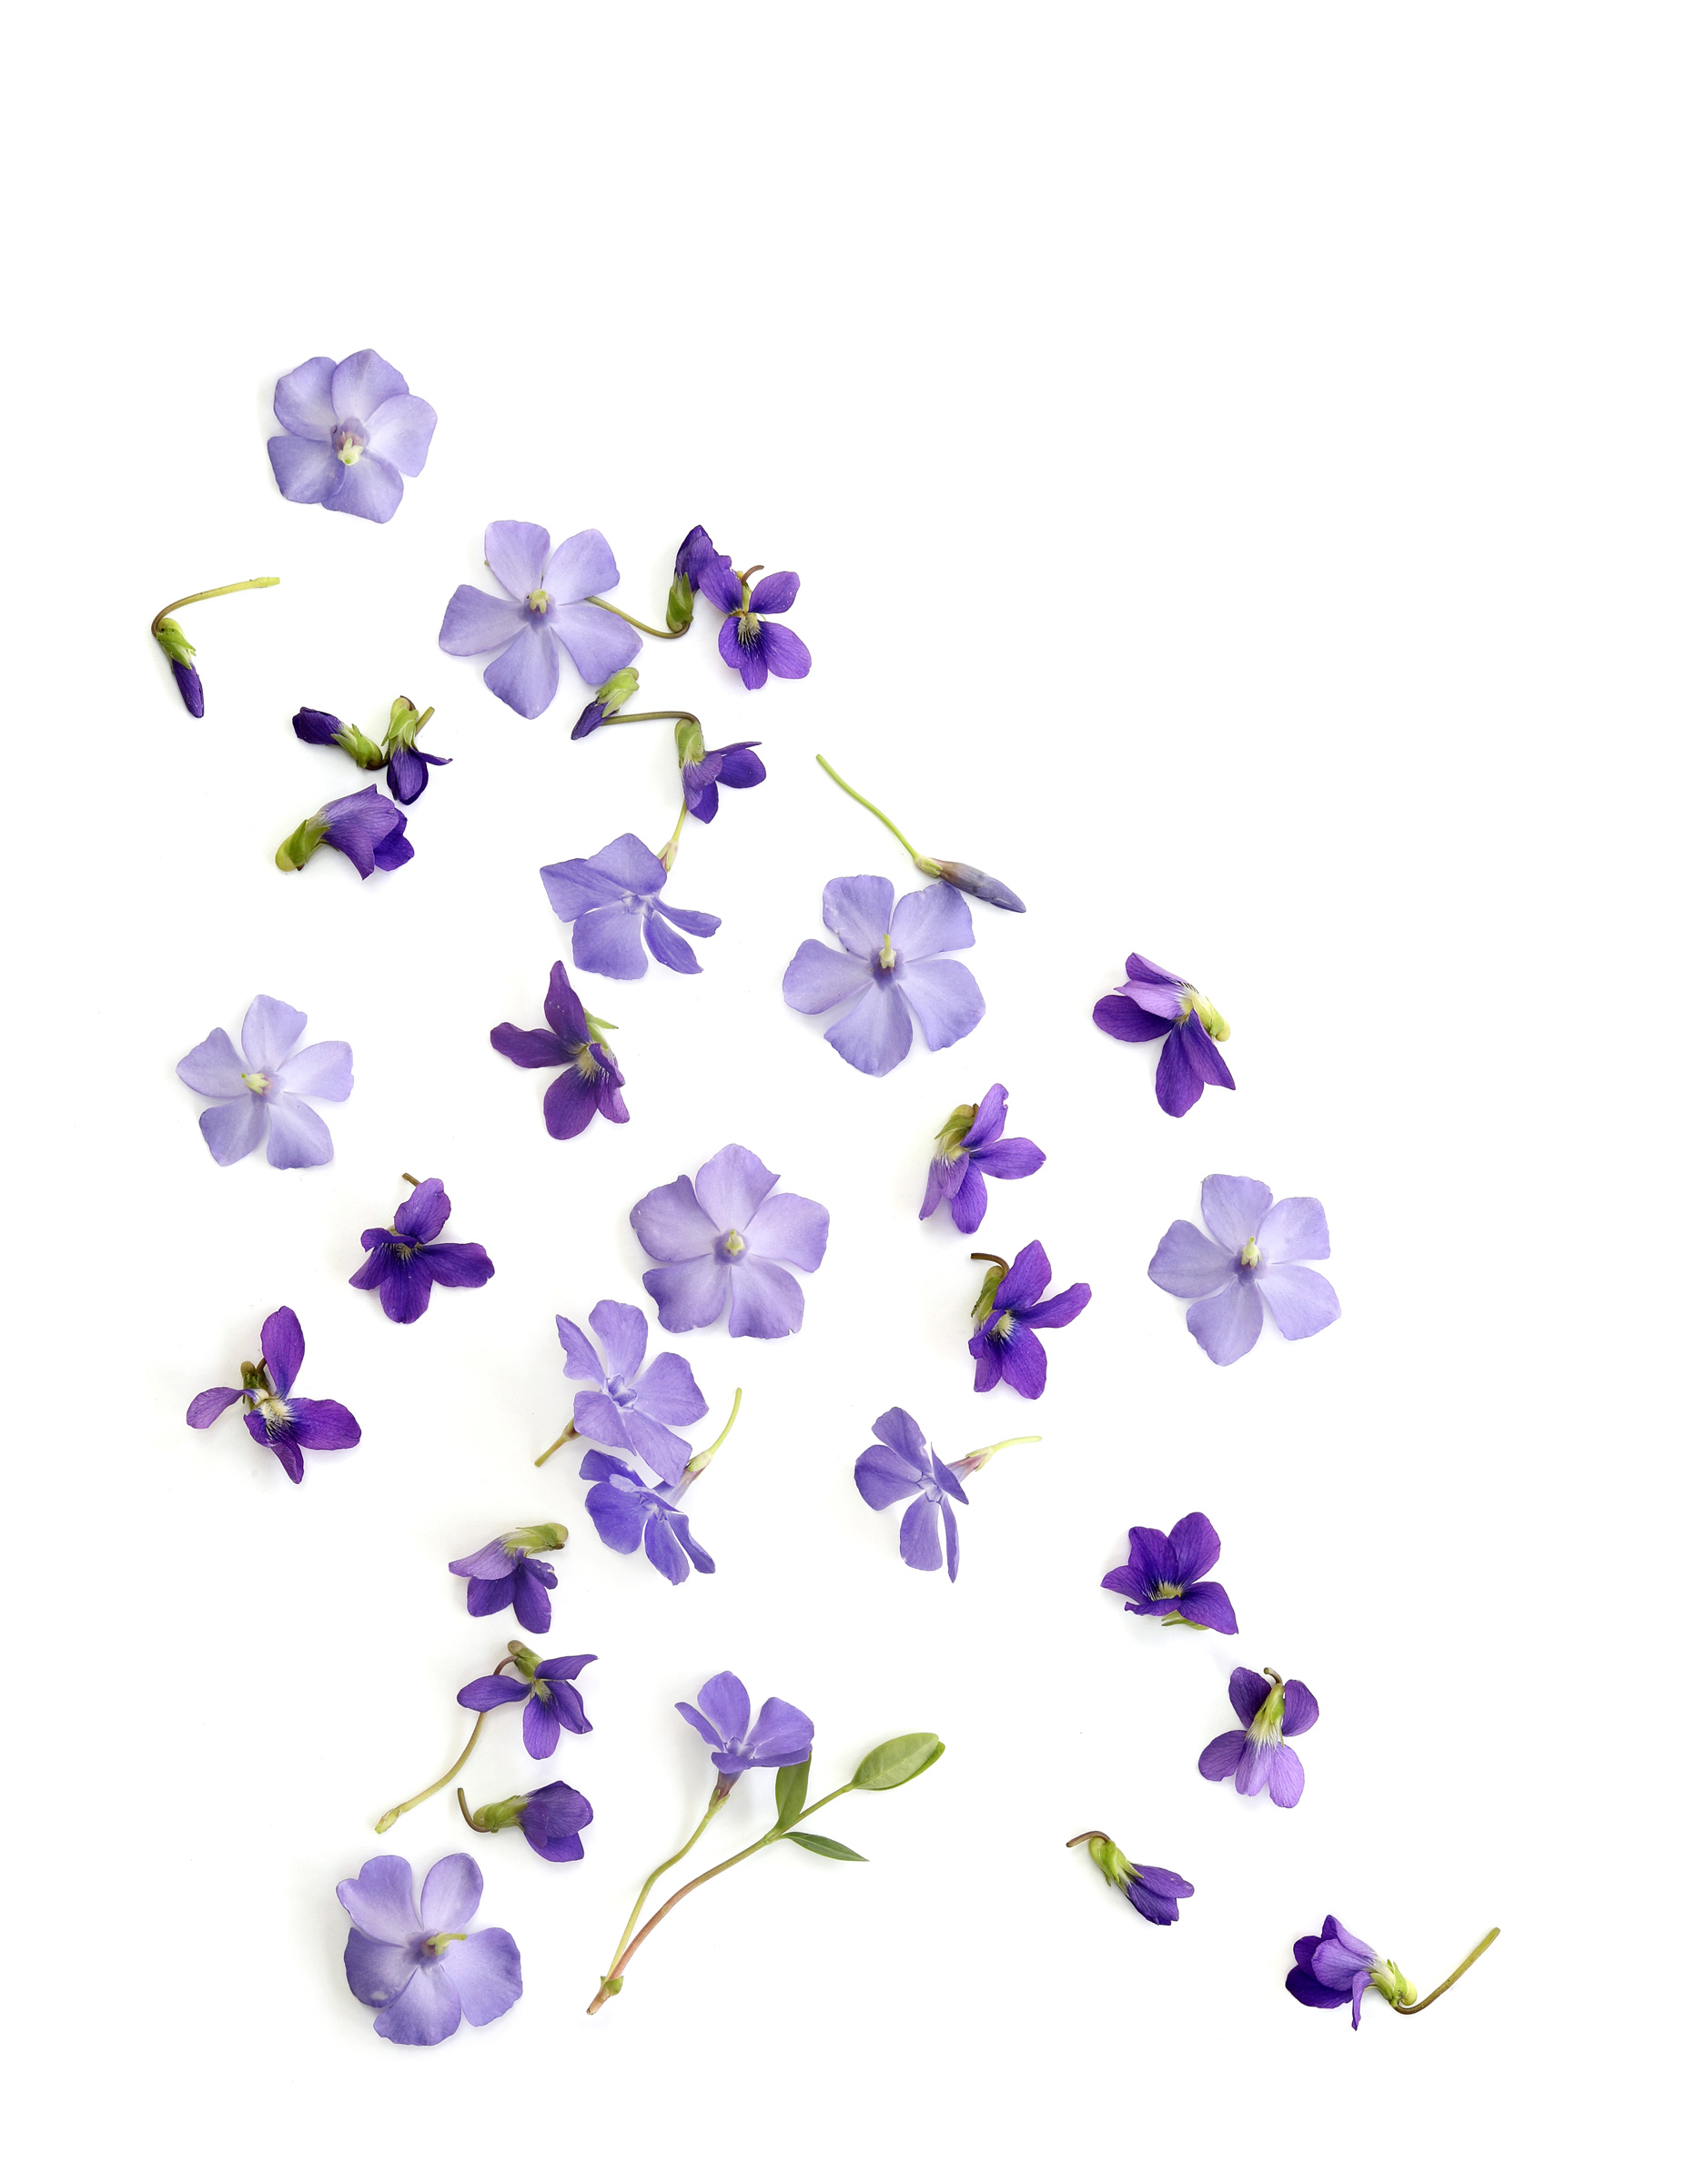 vincas and violets